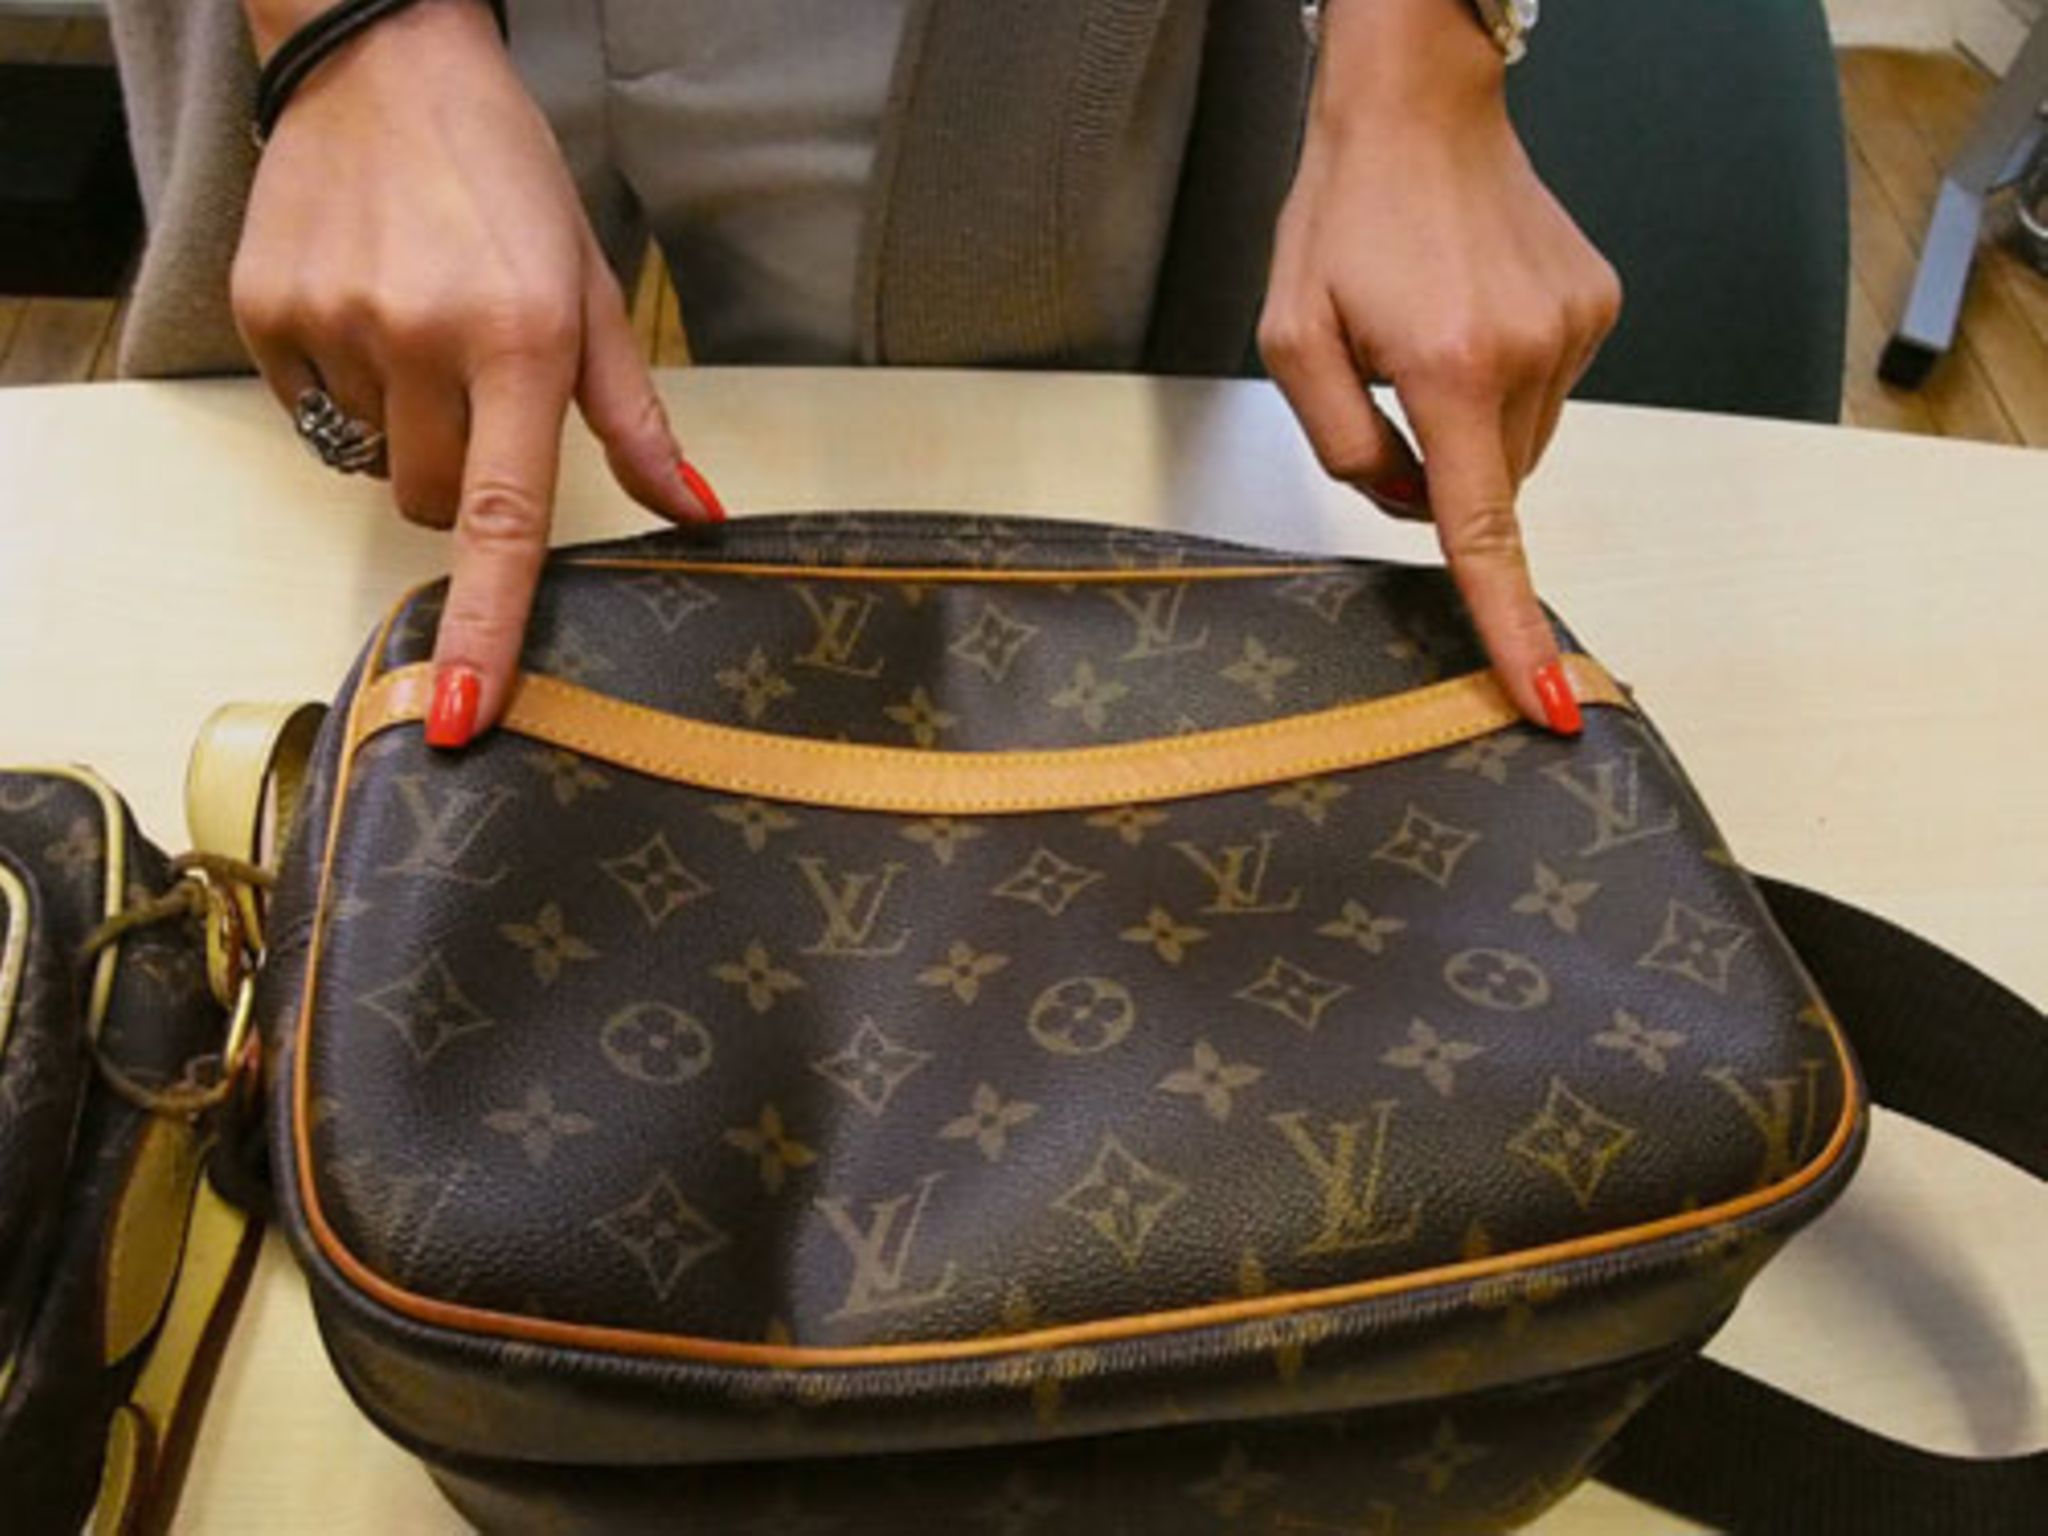 Louis Vuitton Taschen - Fake und Original sicher erkennen!